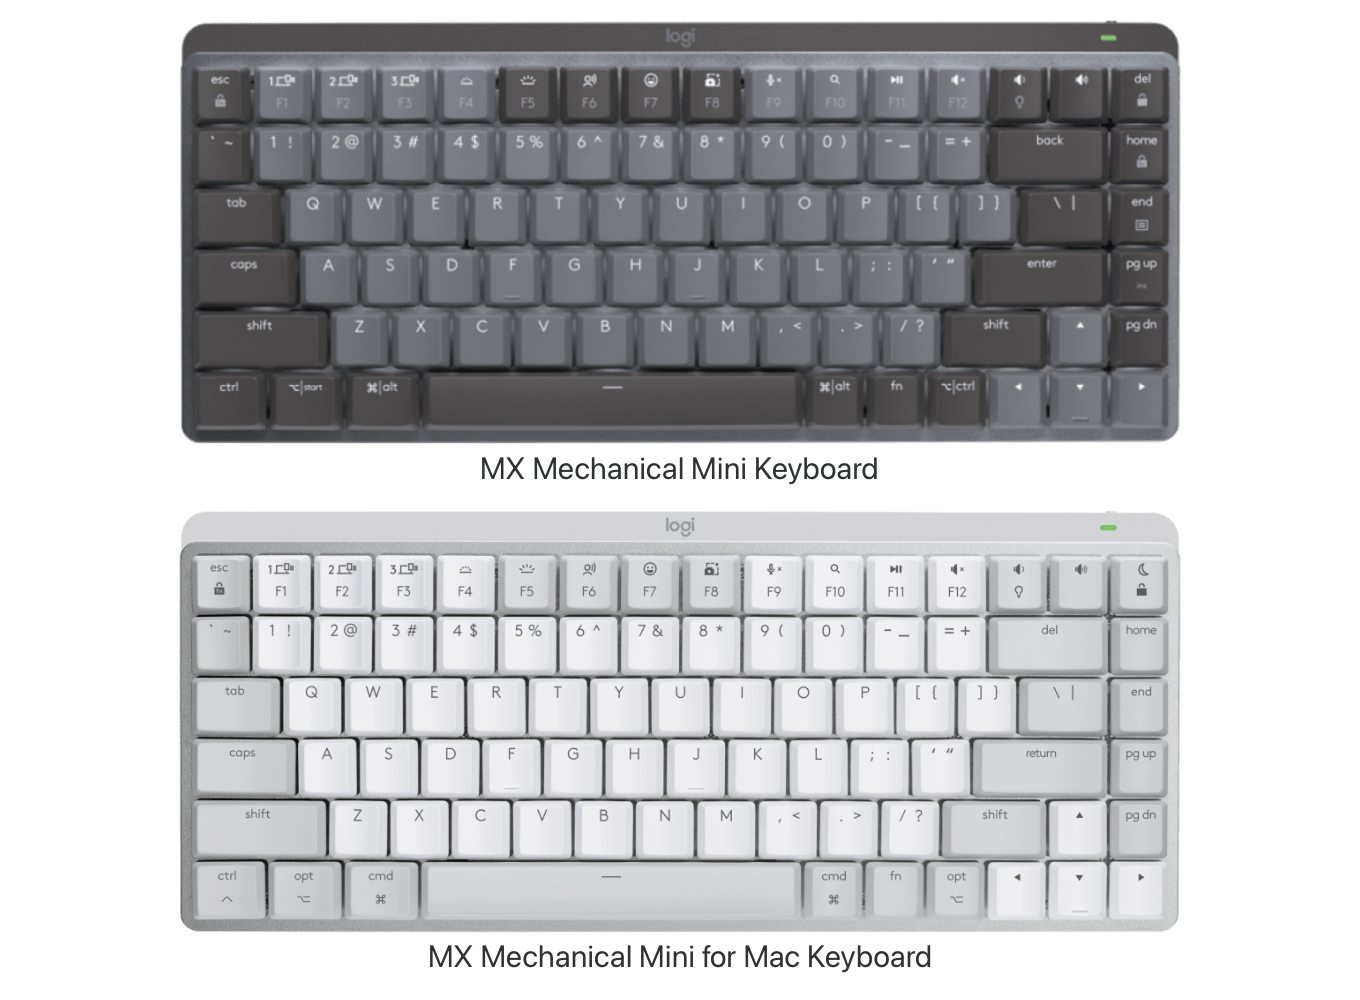 MX Mechanical Mini for Win and Mac Keyboard